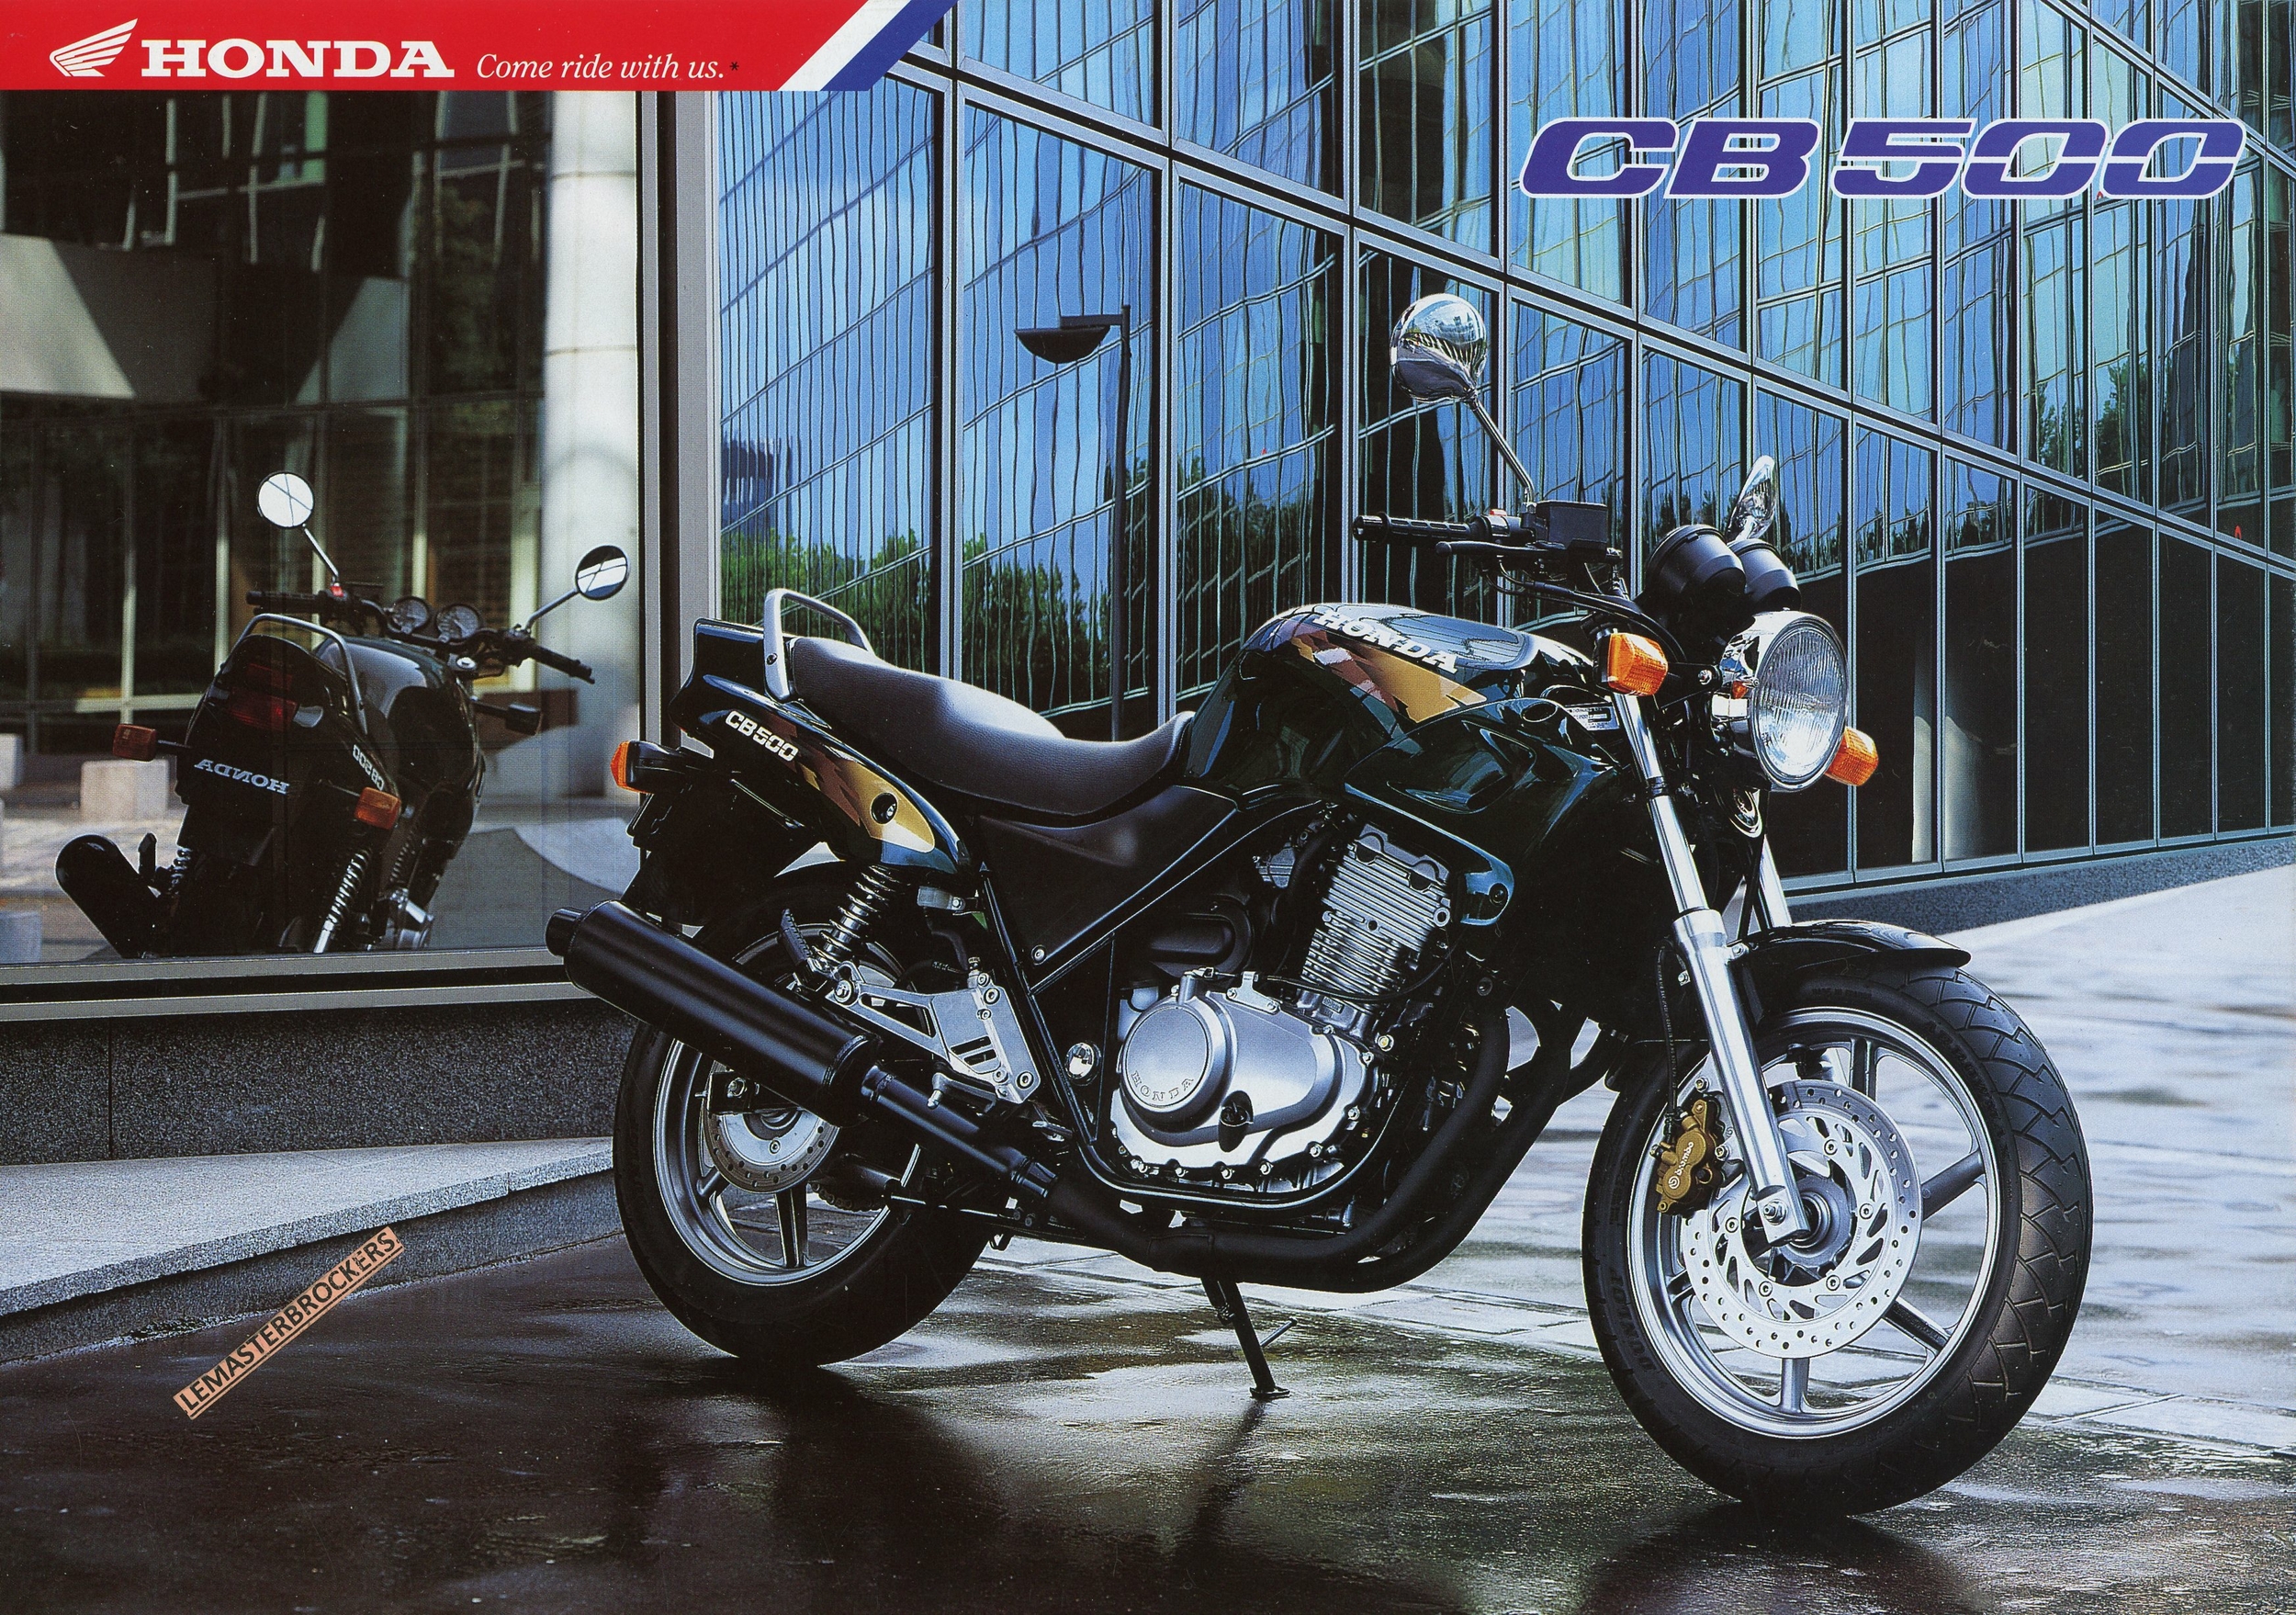 BROCHURE-MOTO-HONDA-CB-500-LEMASTERBROCKERS-CB500-1996